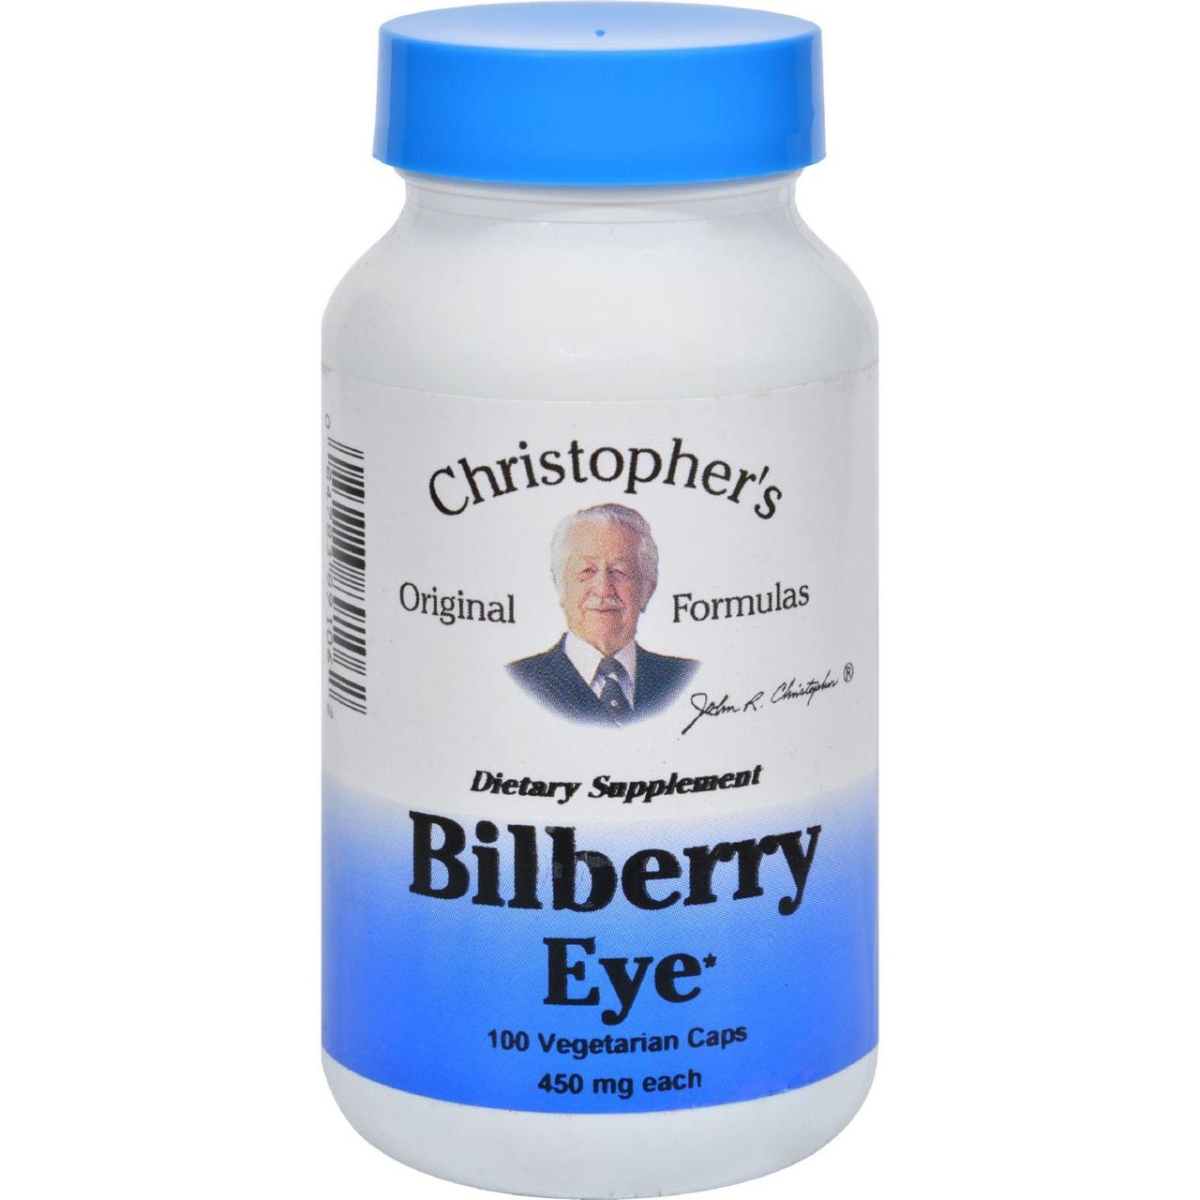 Hg0757799 435 Mg Bilberry Eye, 100 Vegetarian Capsules